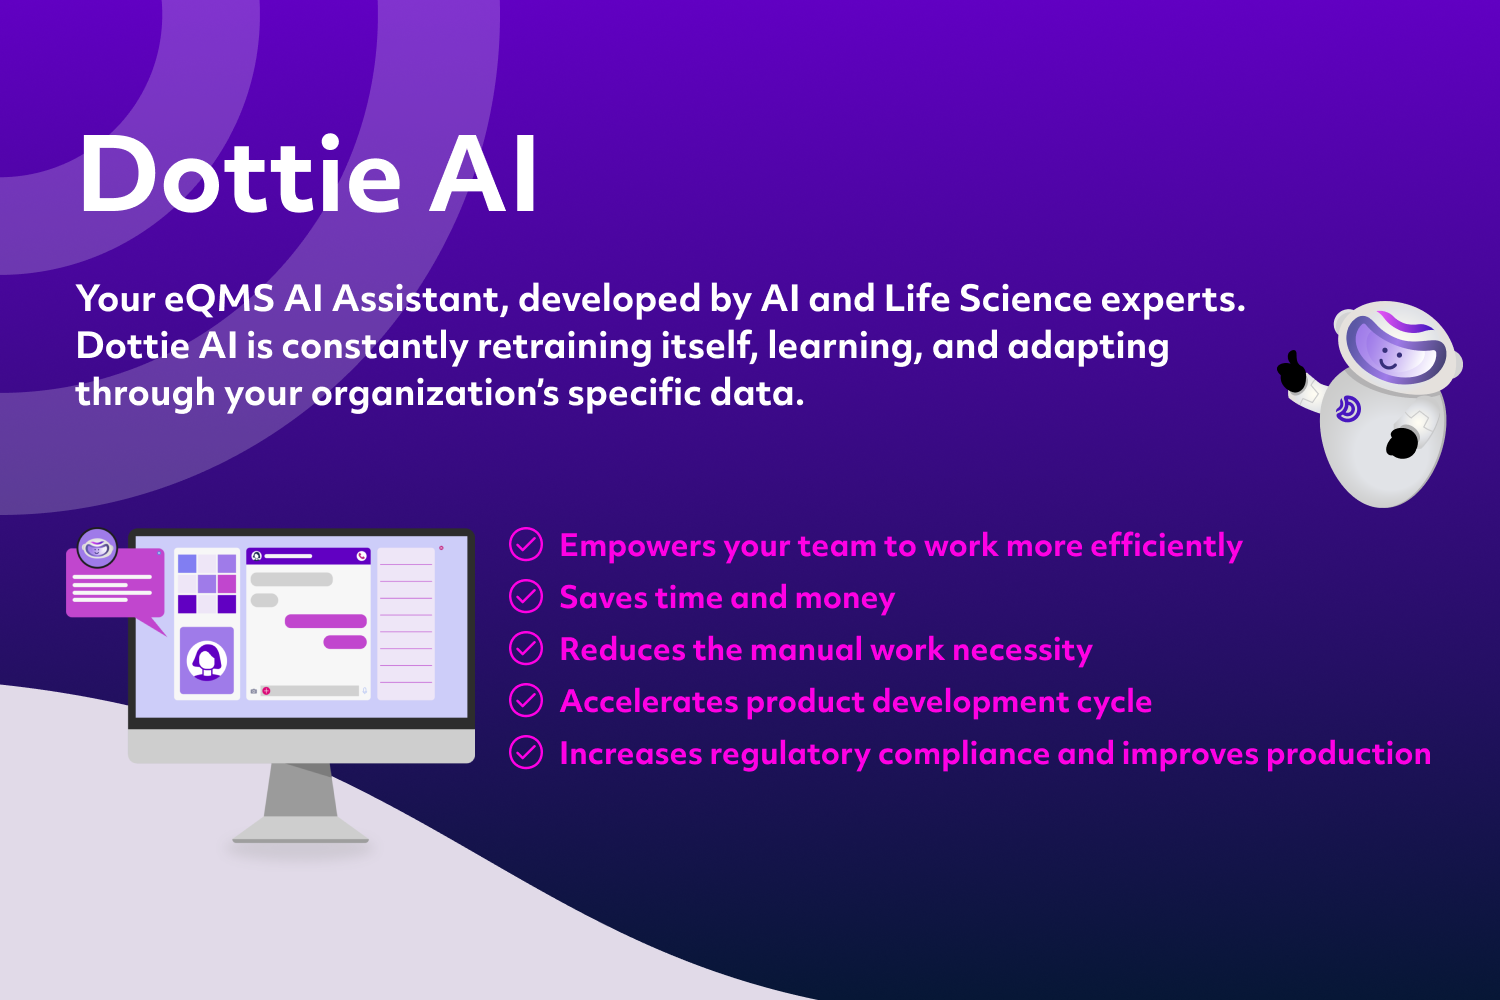 Dottie AI Xpress, your eQMS AI Assistant